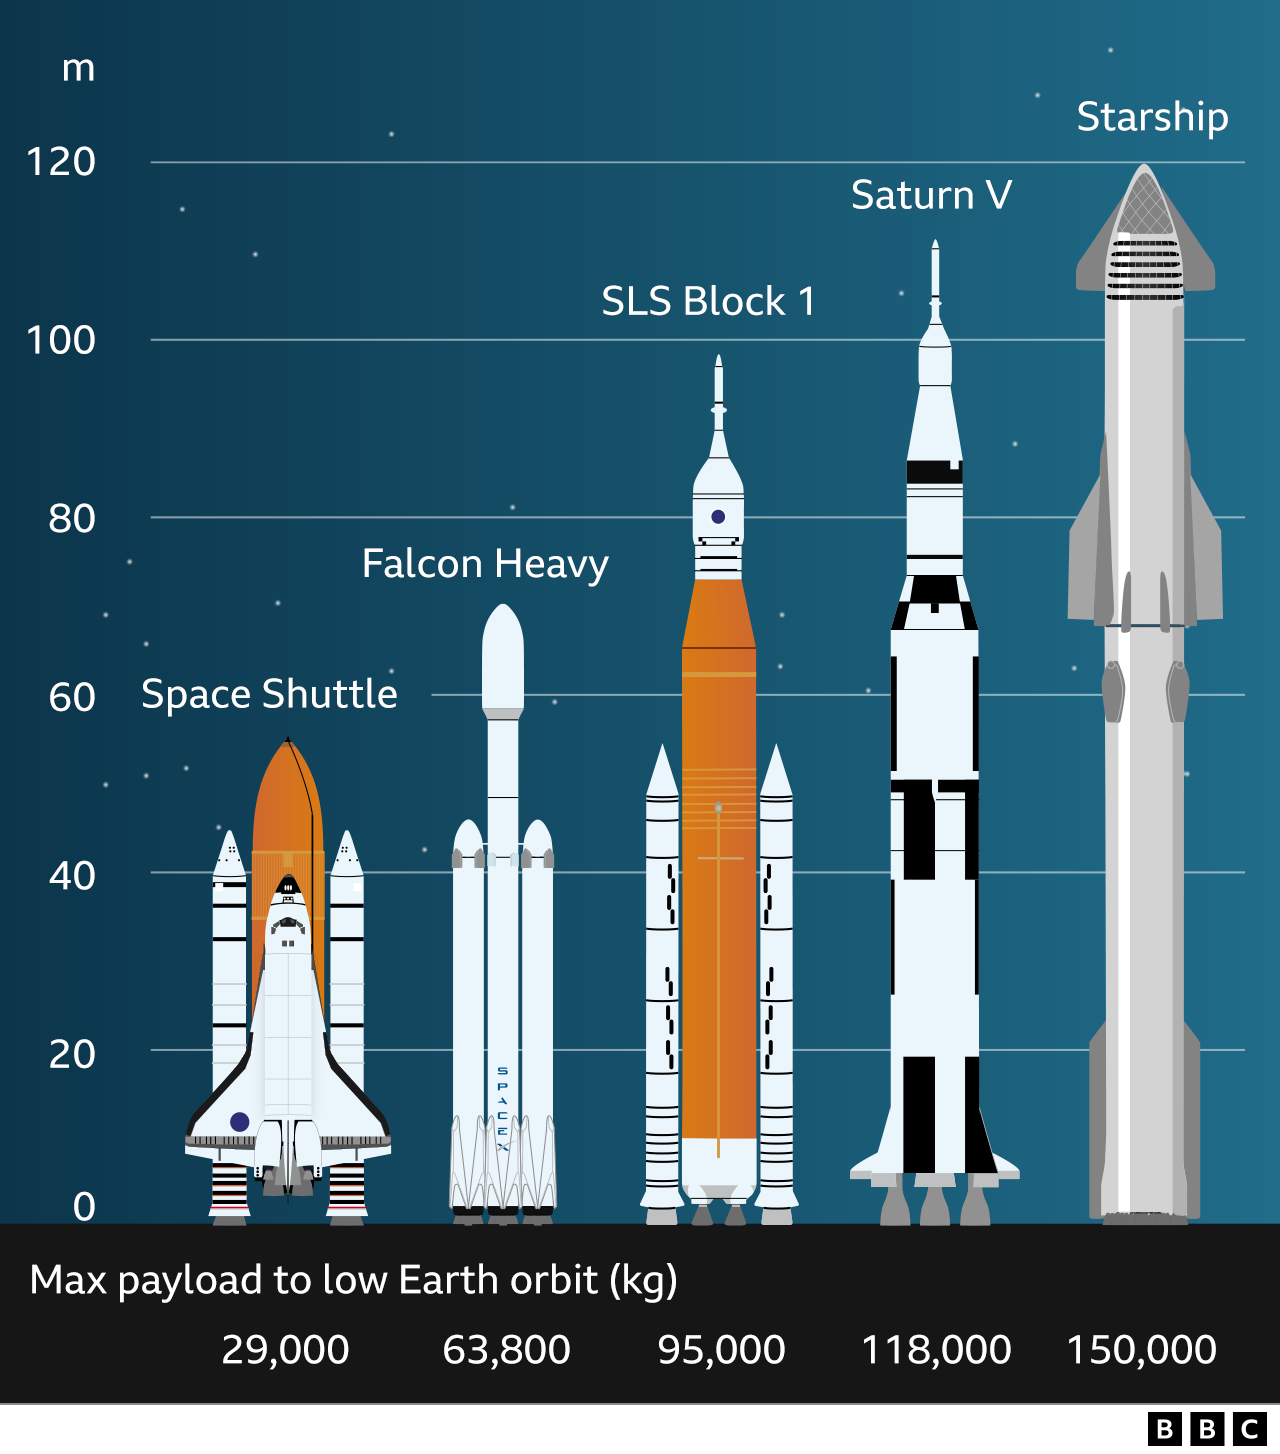 Сравнение ракет